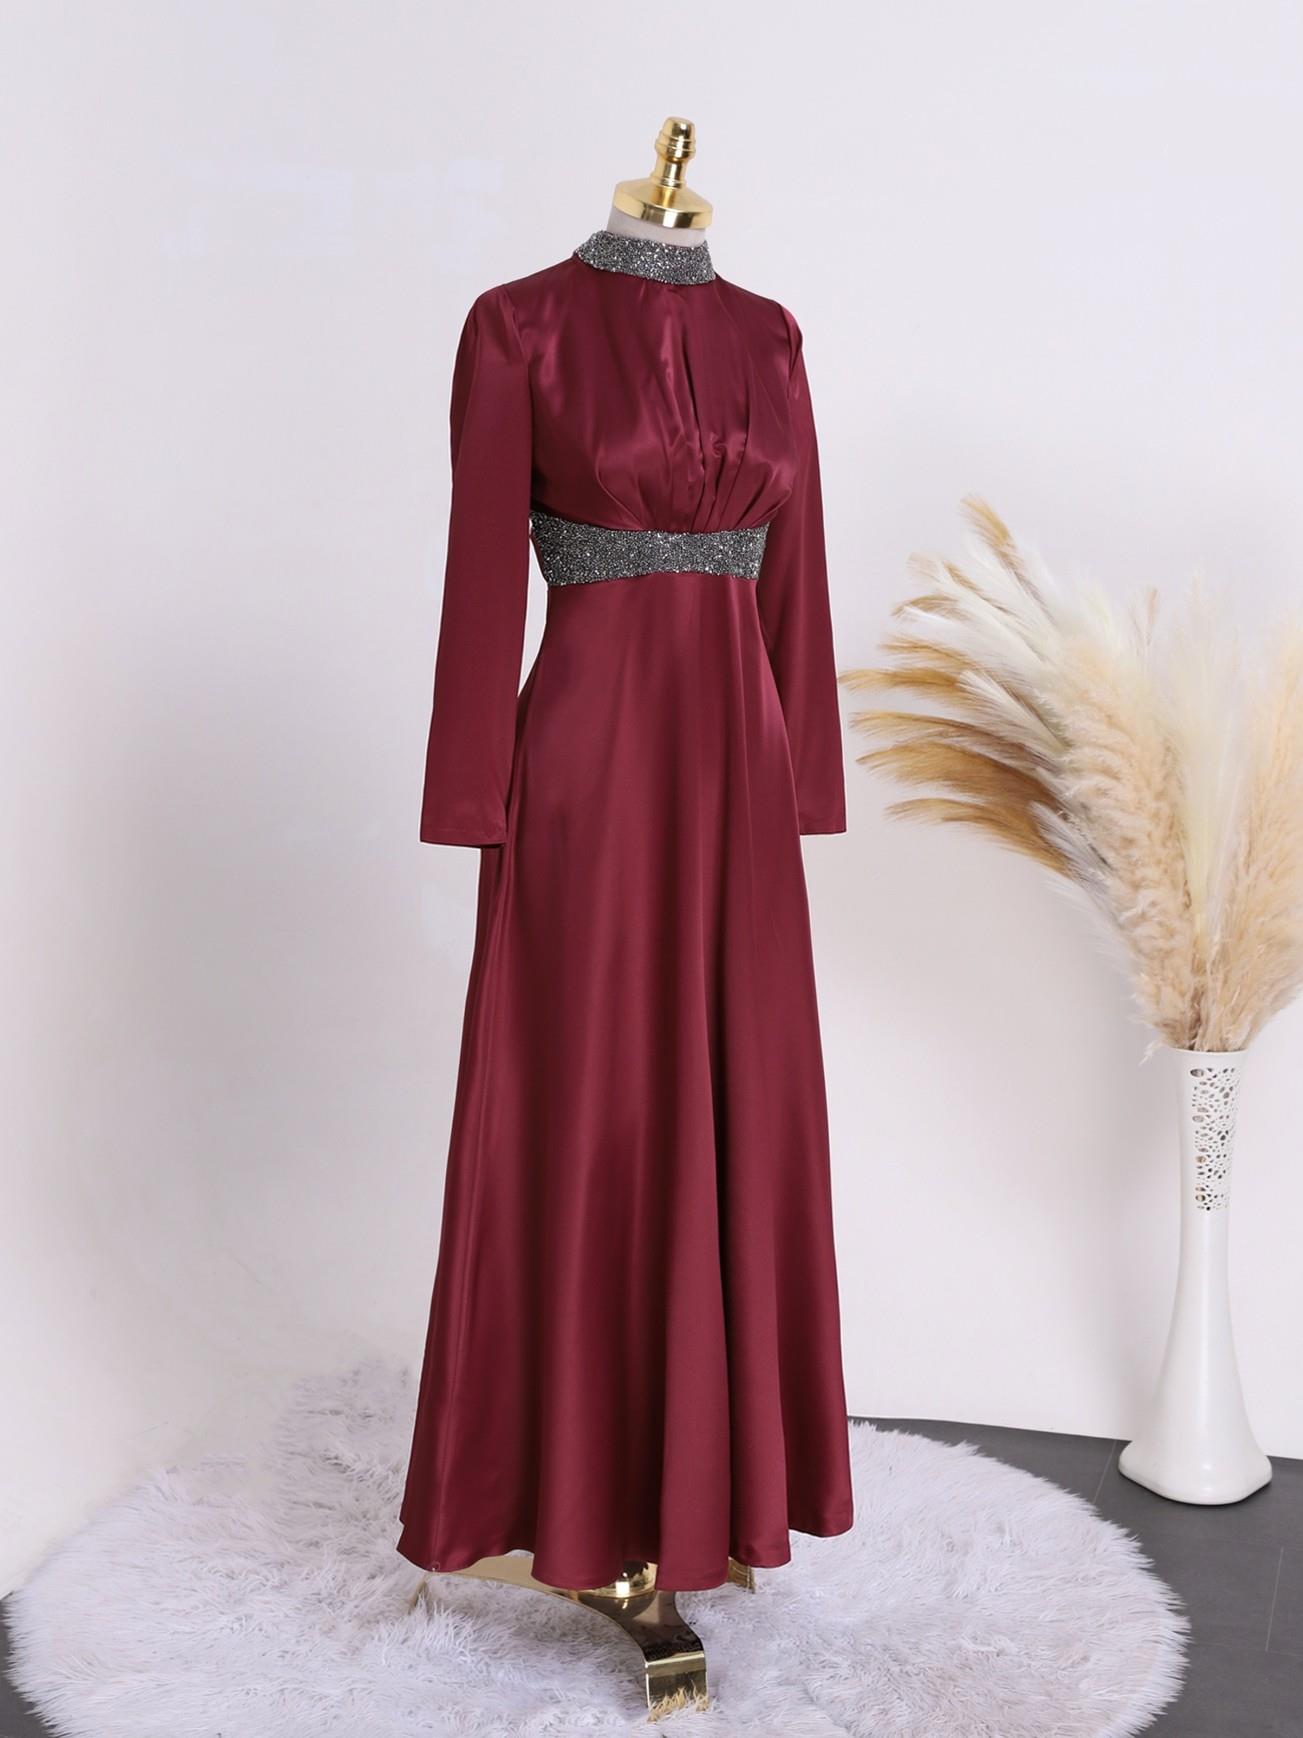 hijab fashion online shop